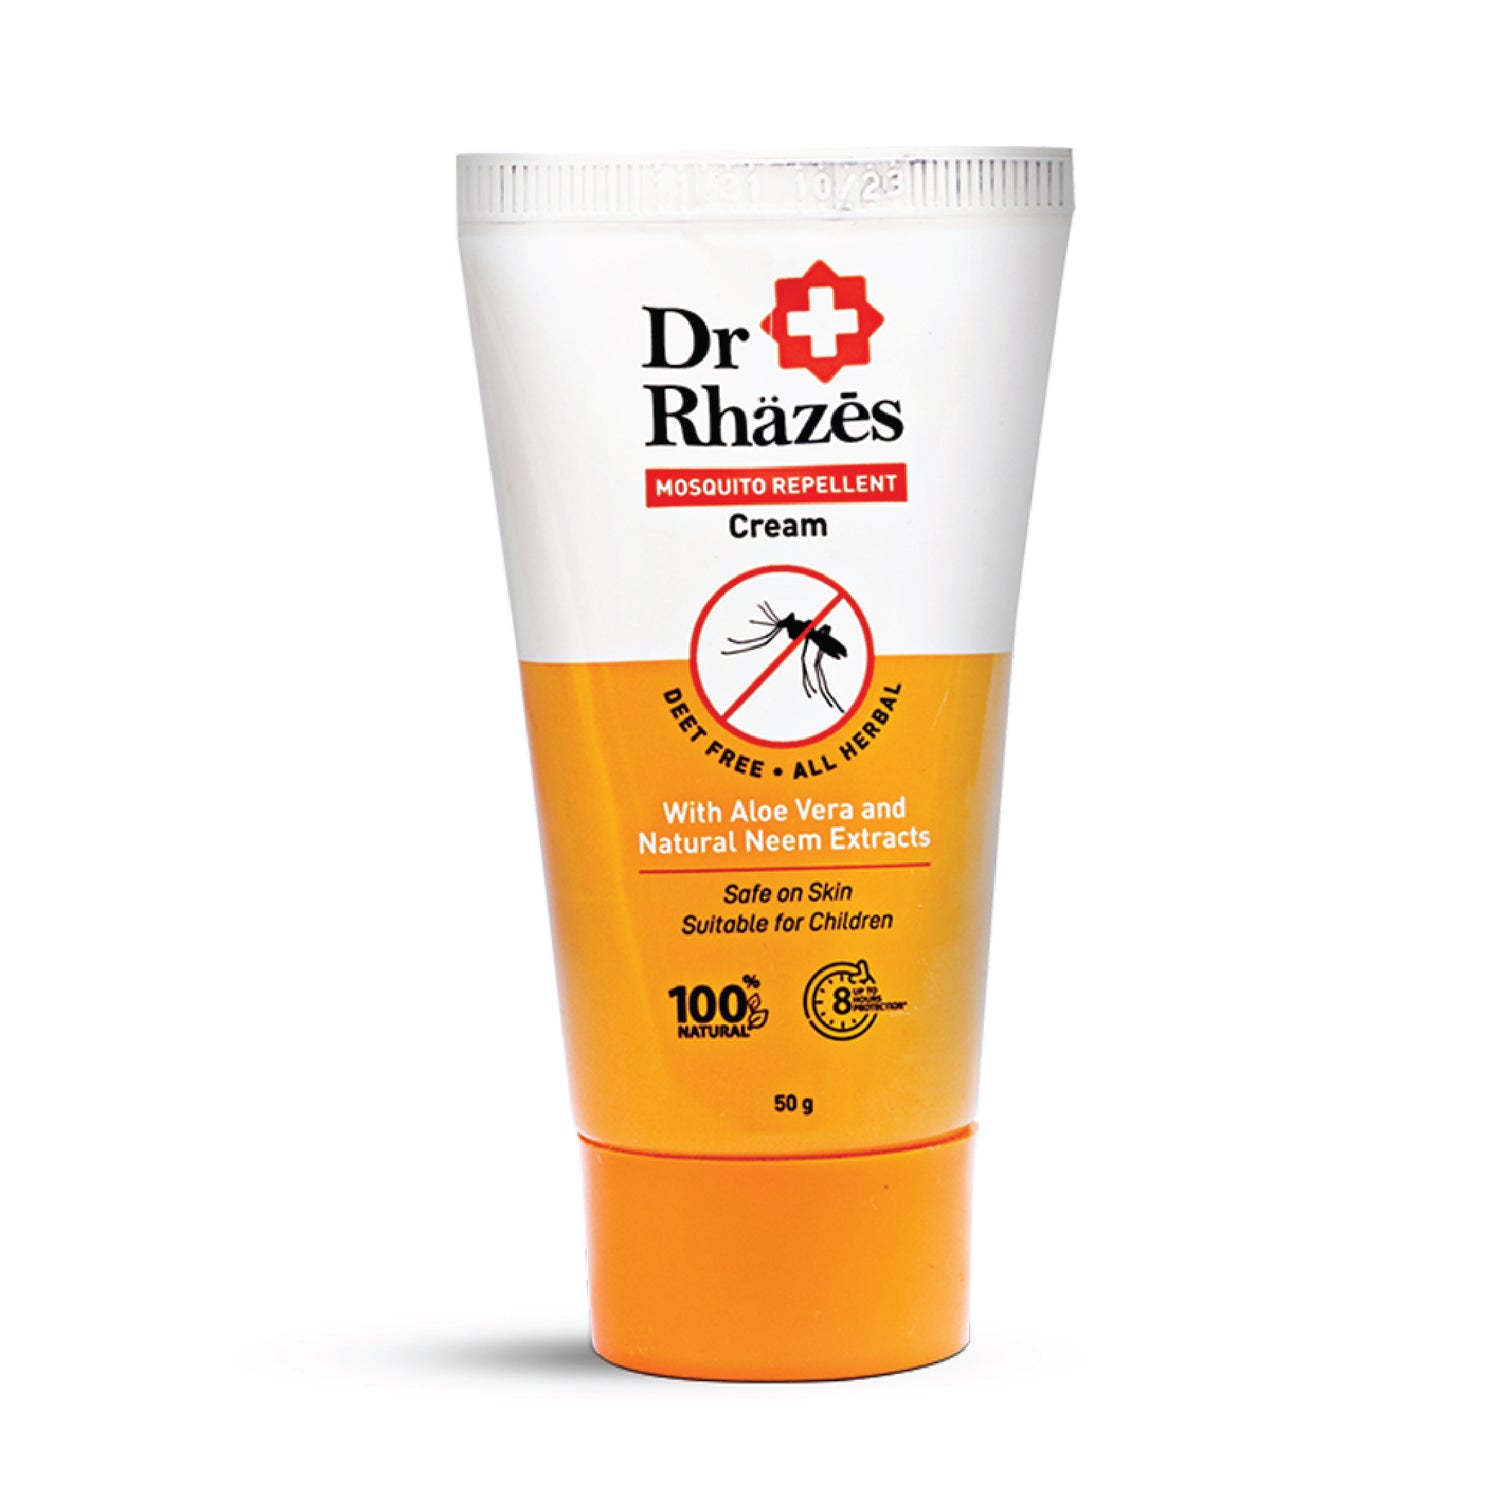 Dr Rhazes Mosquito Repellent Cream